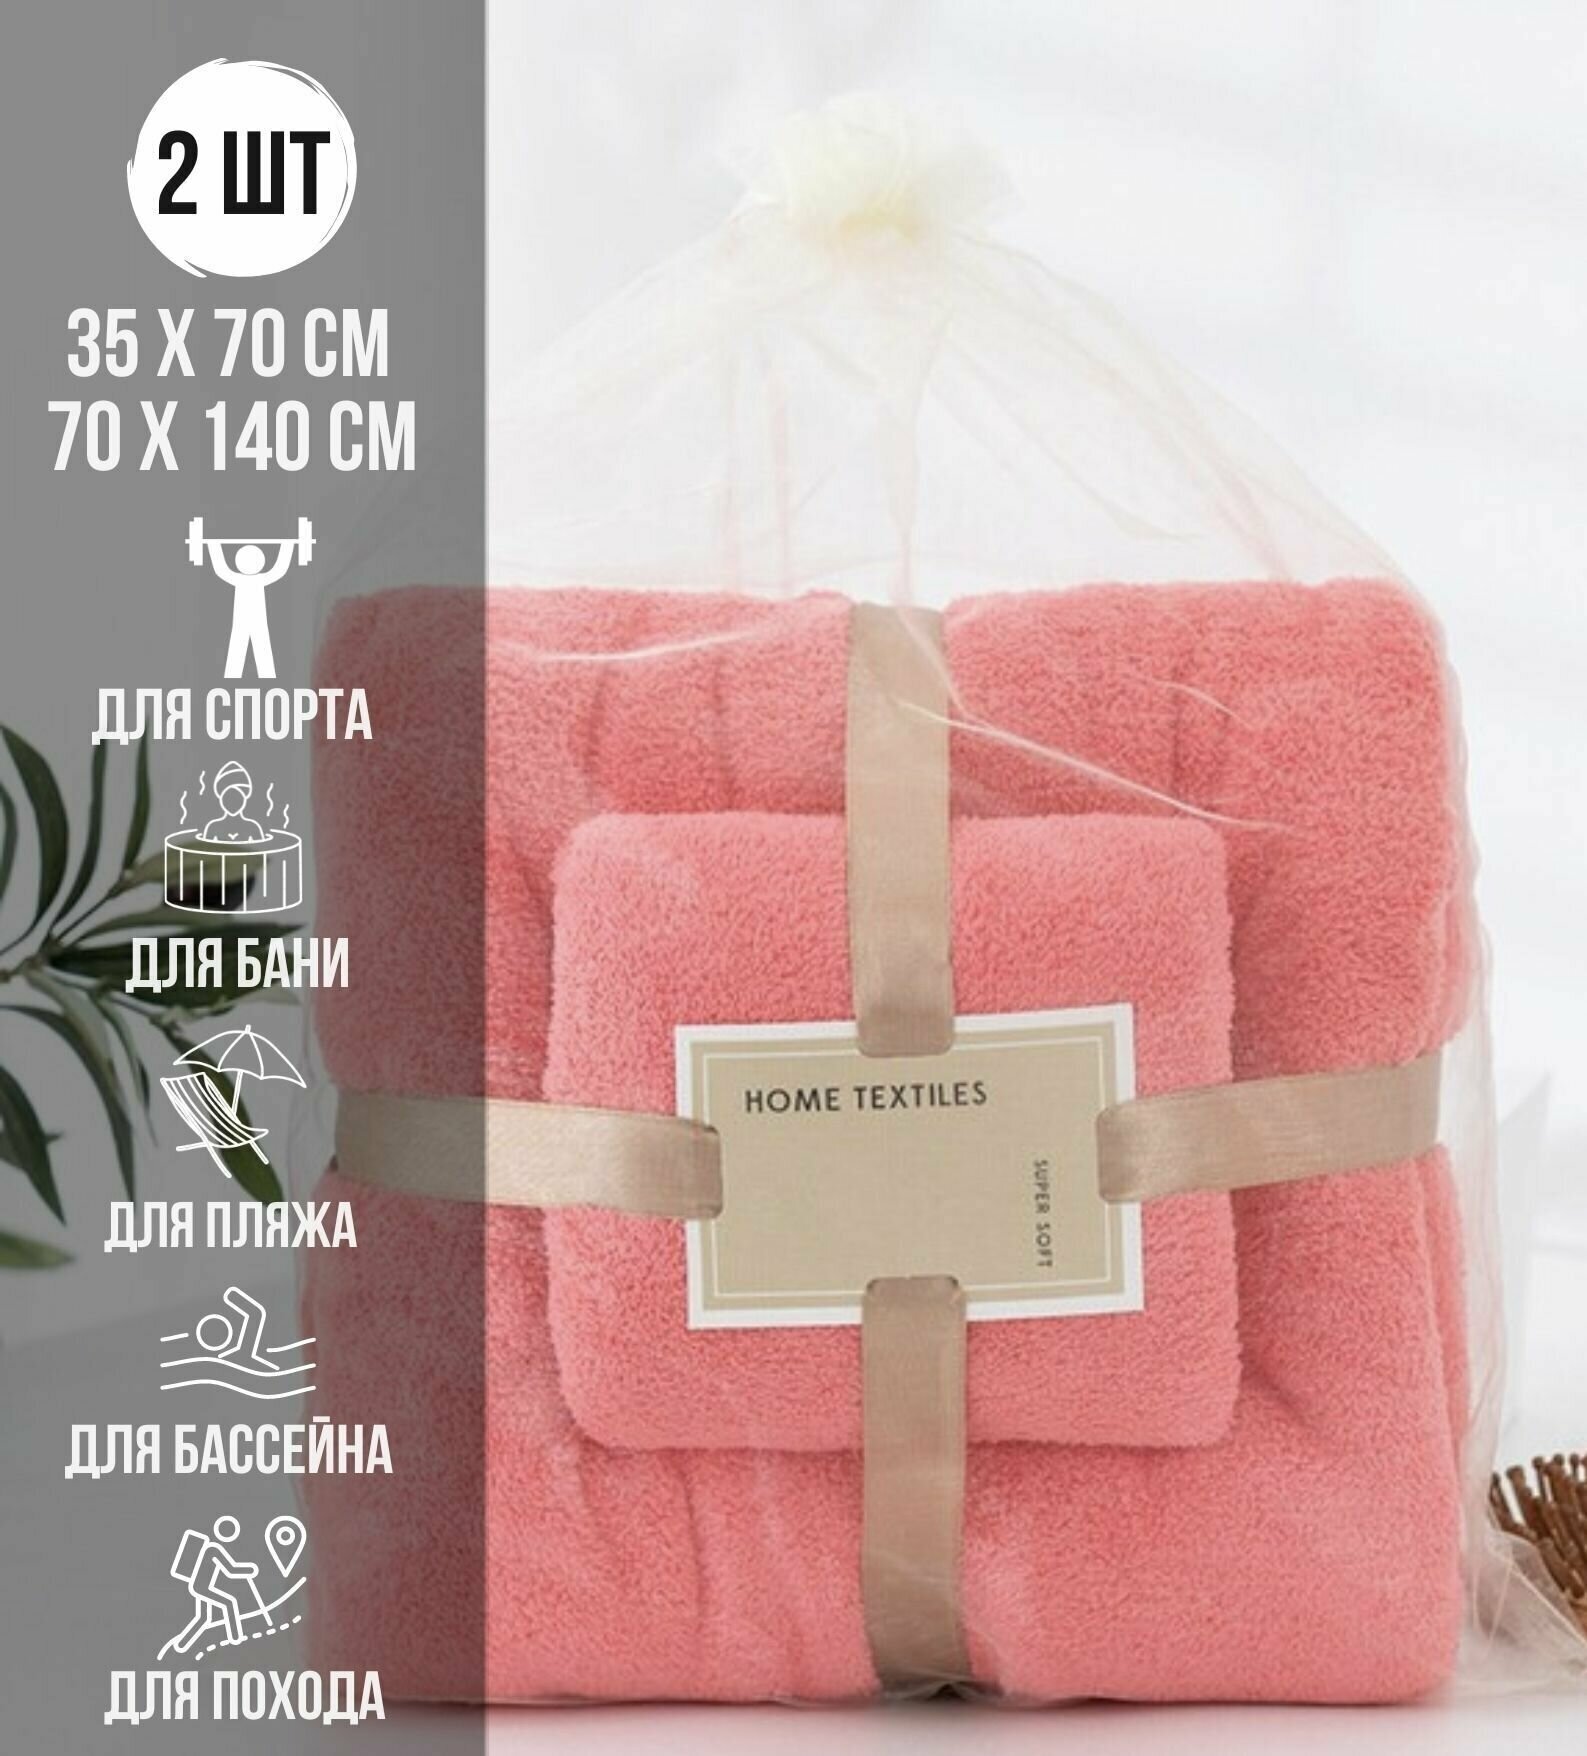 2 полотенца из микрофибры 35x70, 70x140 для бани, ванной , активного отдыха - фотография № 1